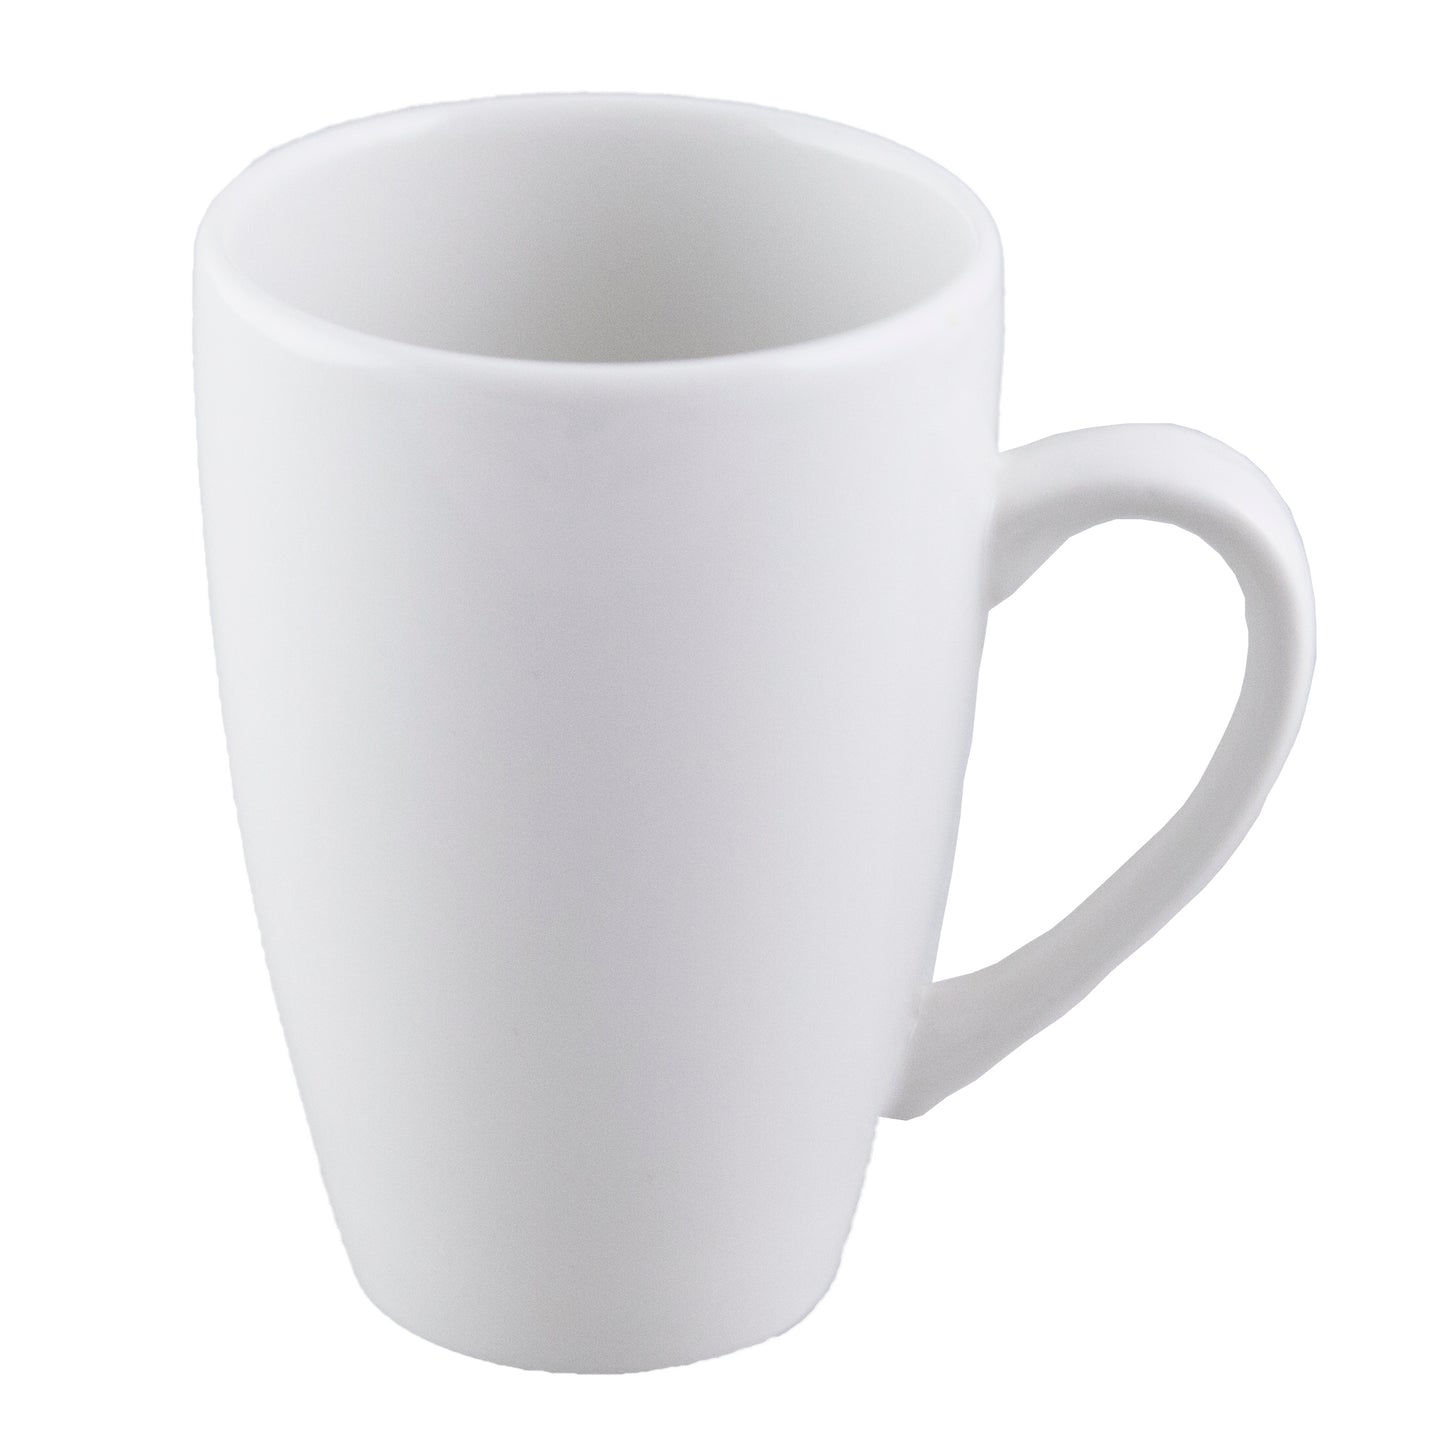 Plain White Aroma Mug, 0.34 L/ 11.5 oz